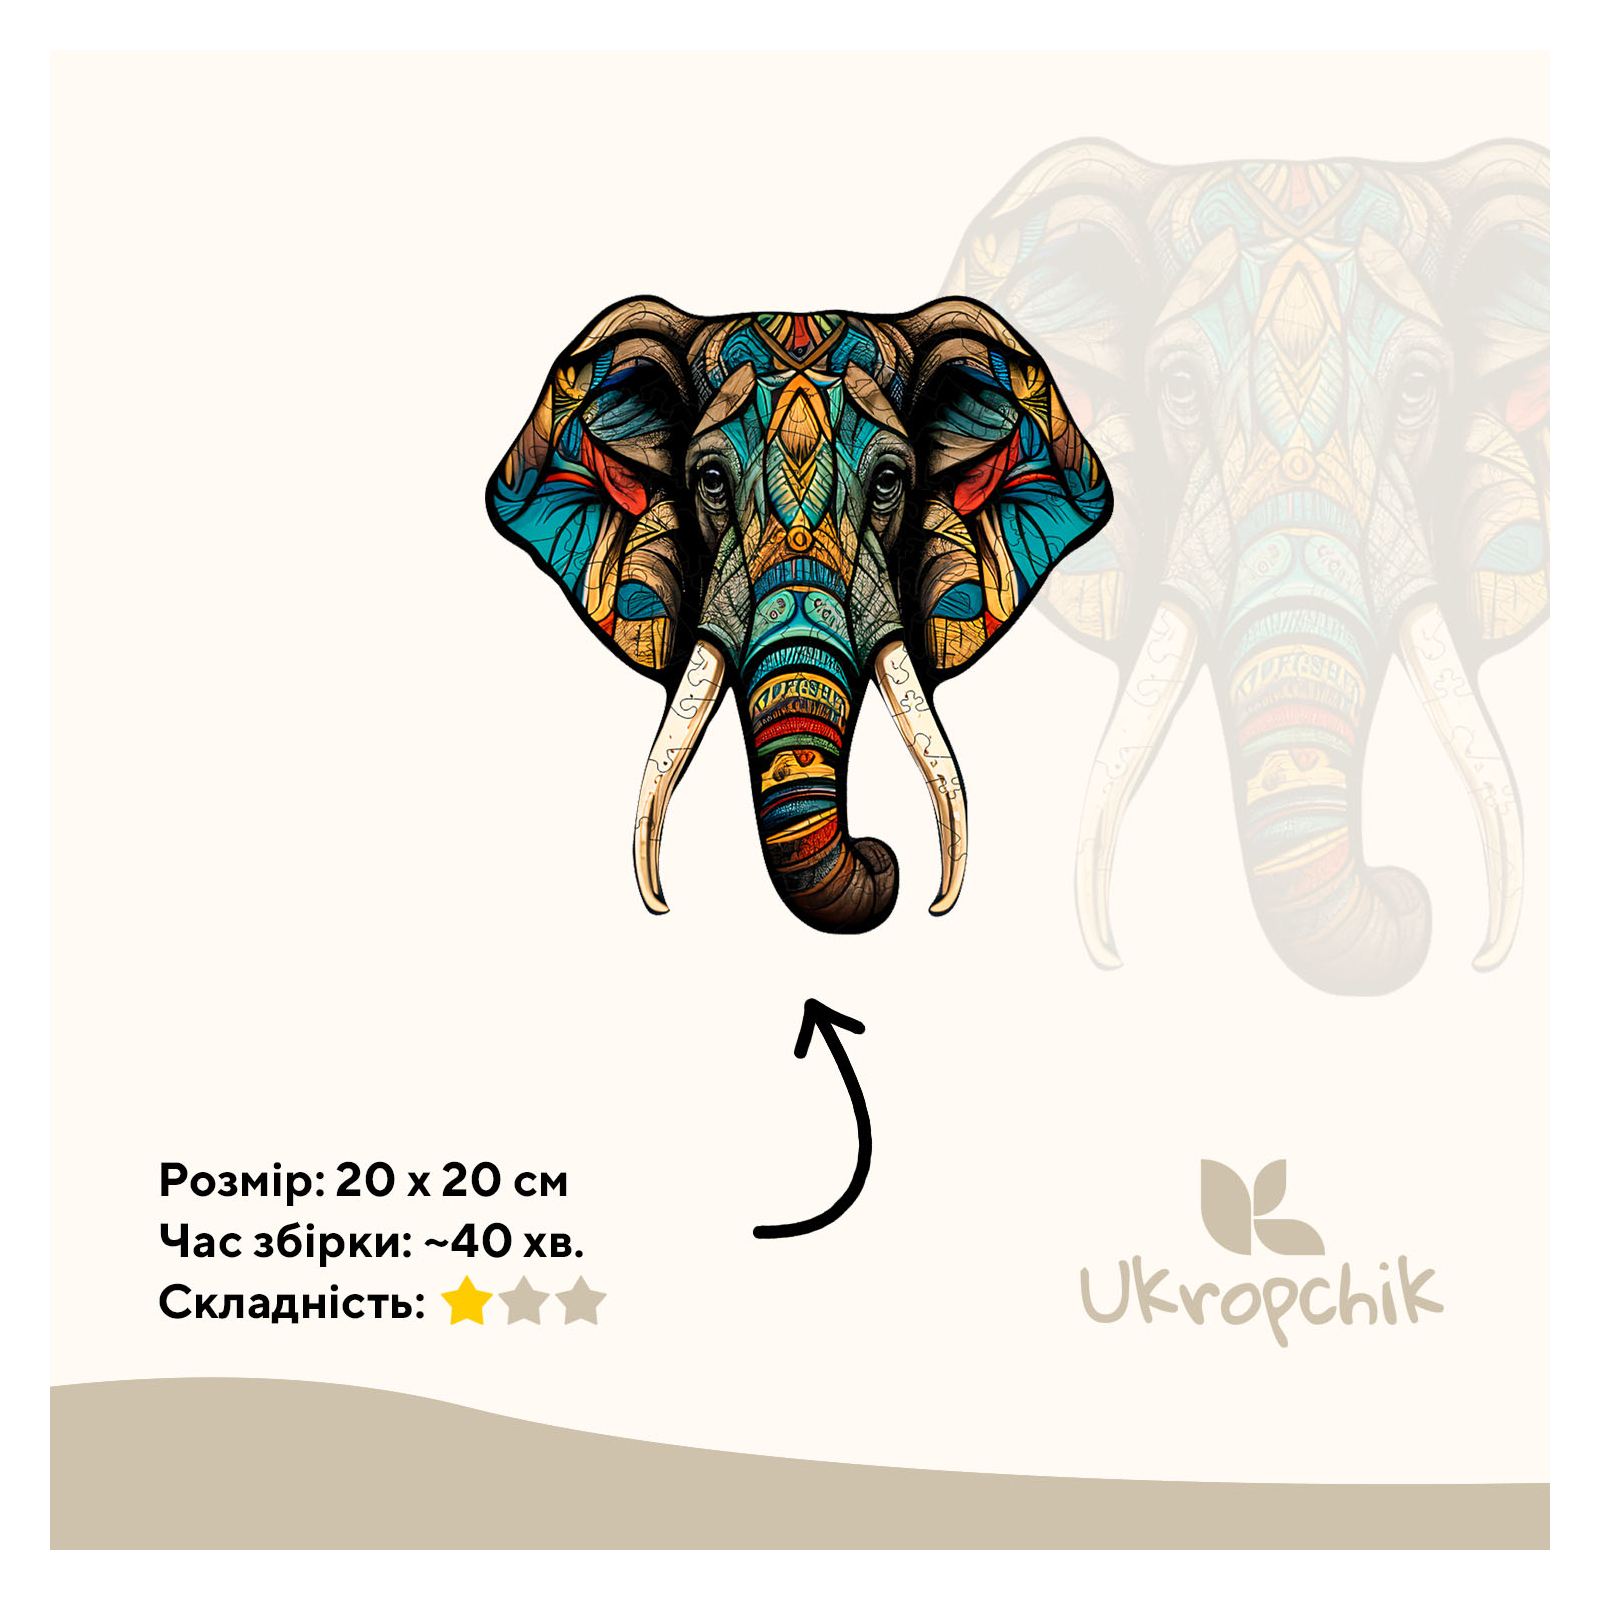 Пазл Ukropchik дерев'яний Тропічний Слон size - M в коробці з набором-рамкою (Tropical Elephant A4) зображення 2